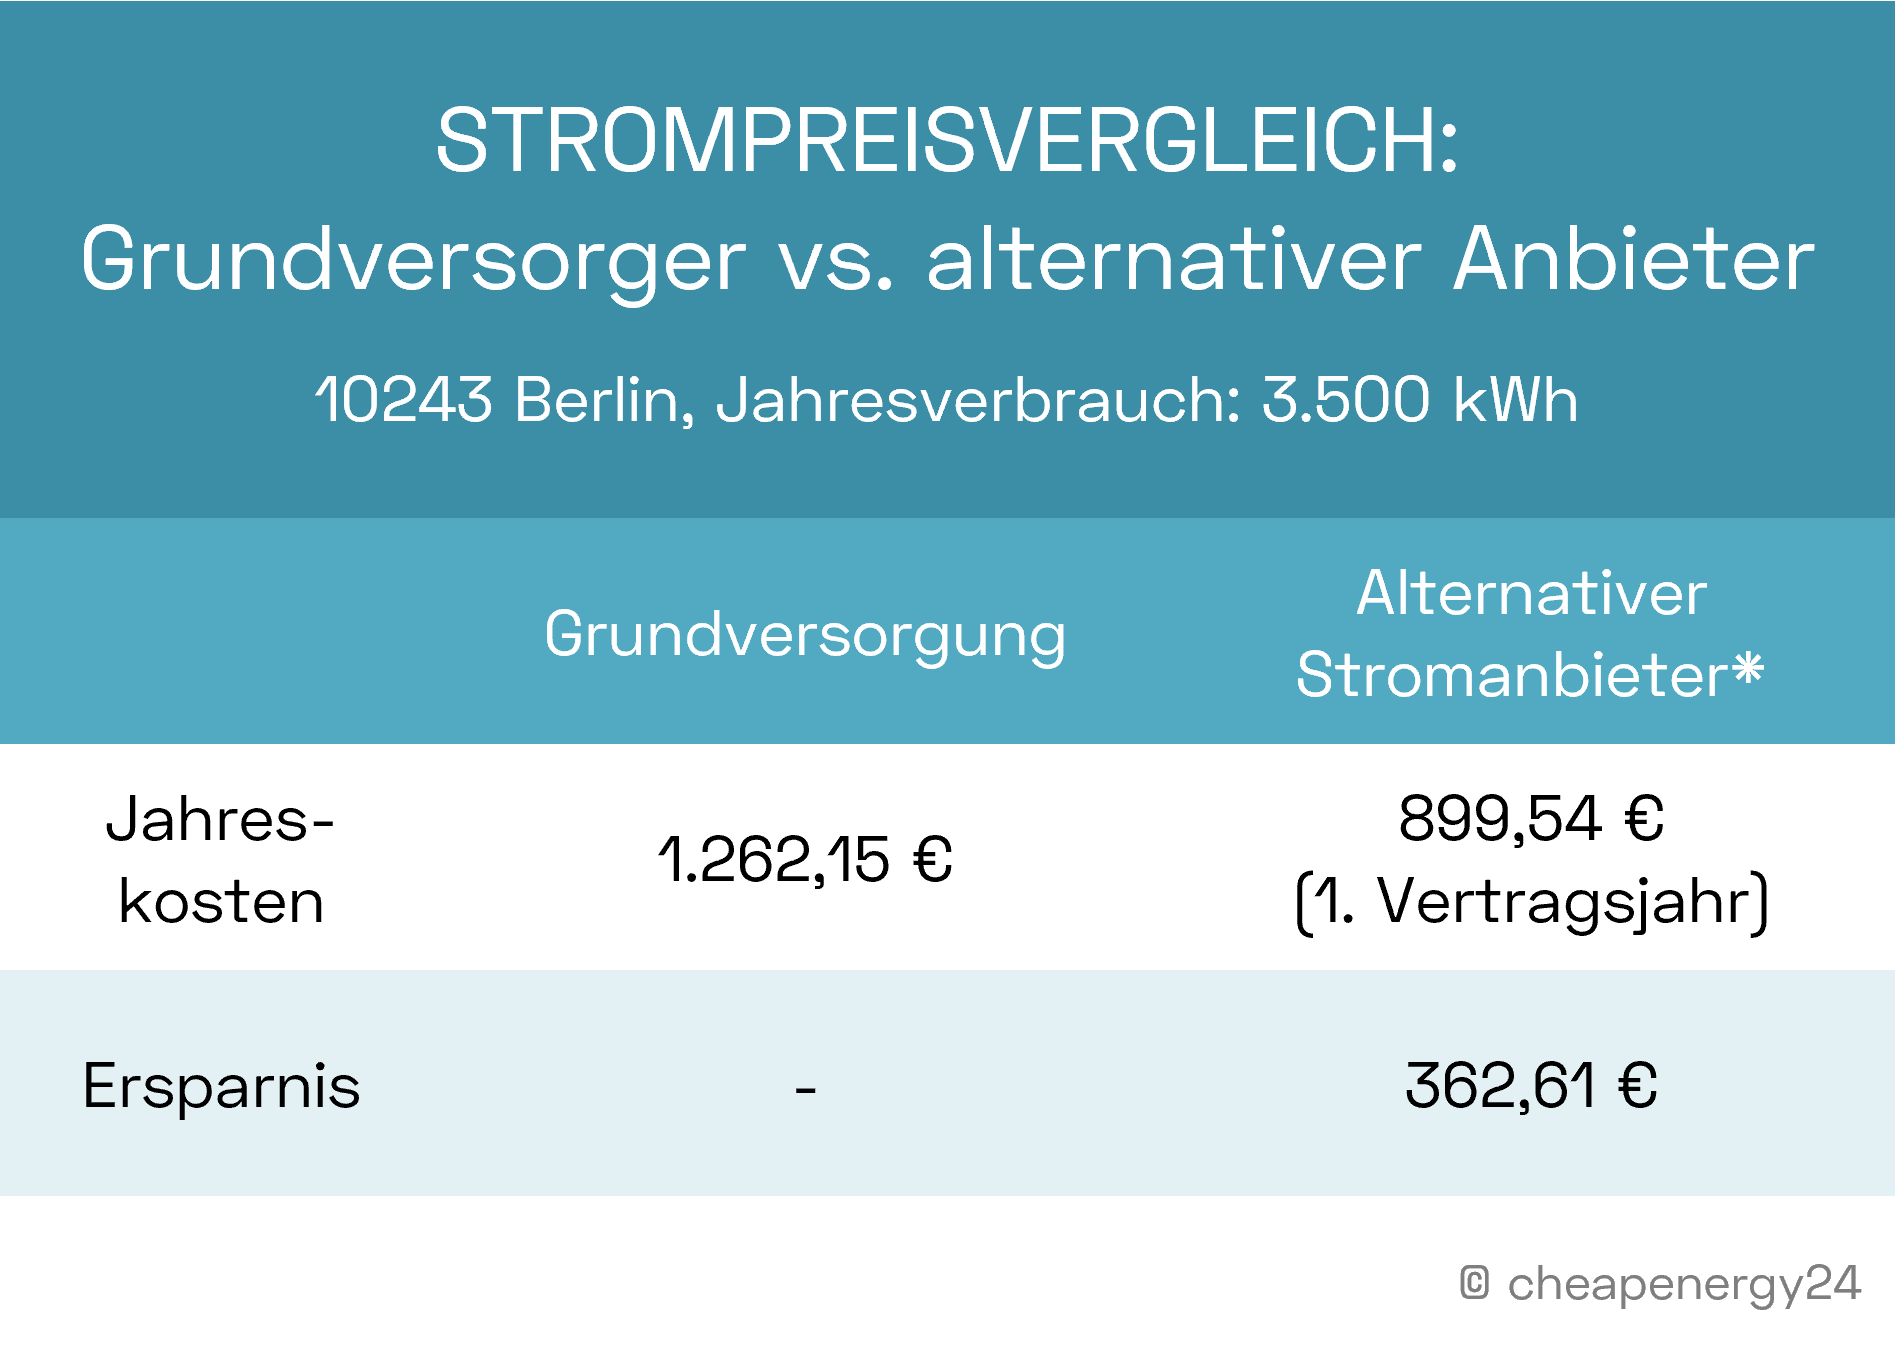 Strompreisvergleich Grundversorgung vs. alternativer Stromanbieter in Berlin